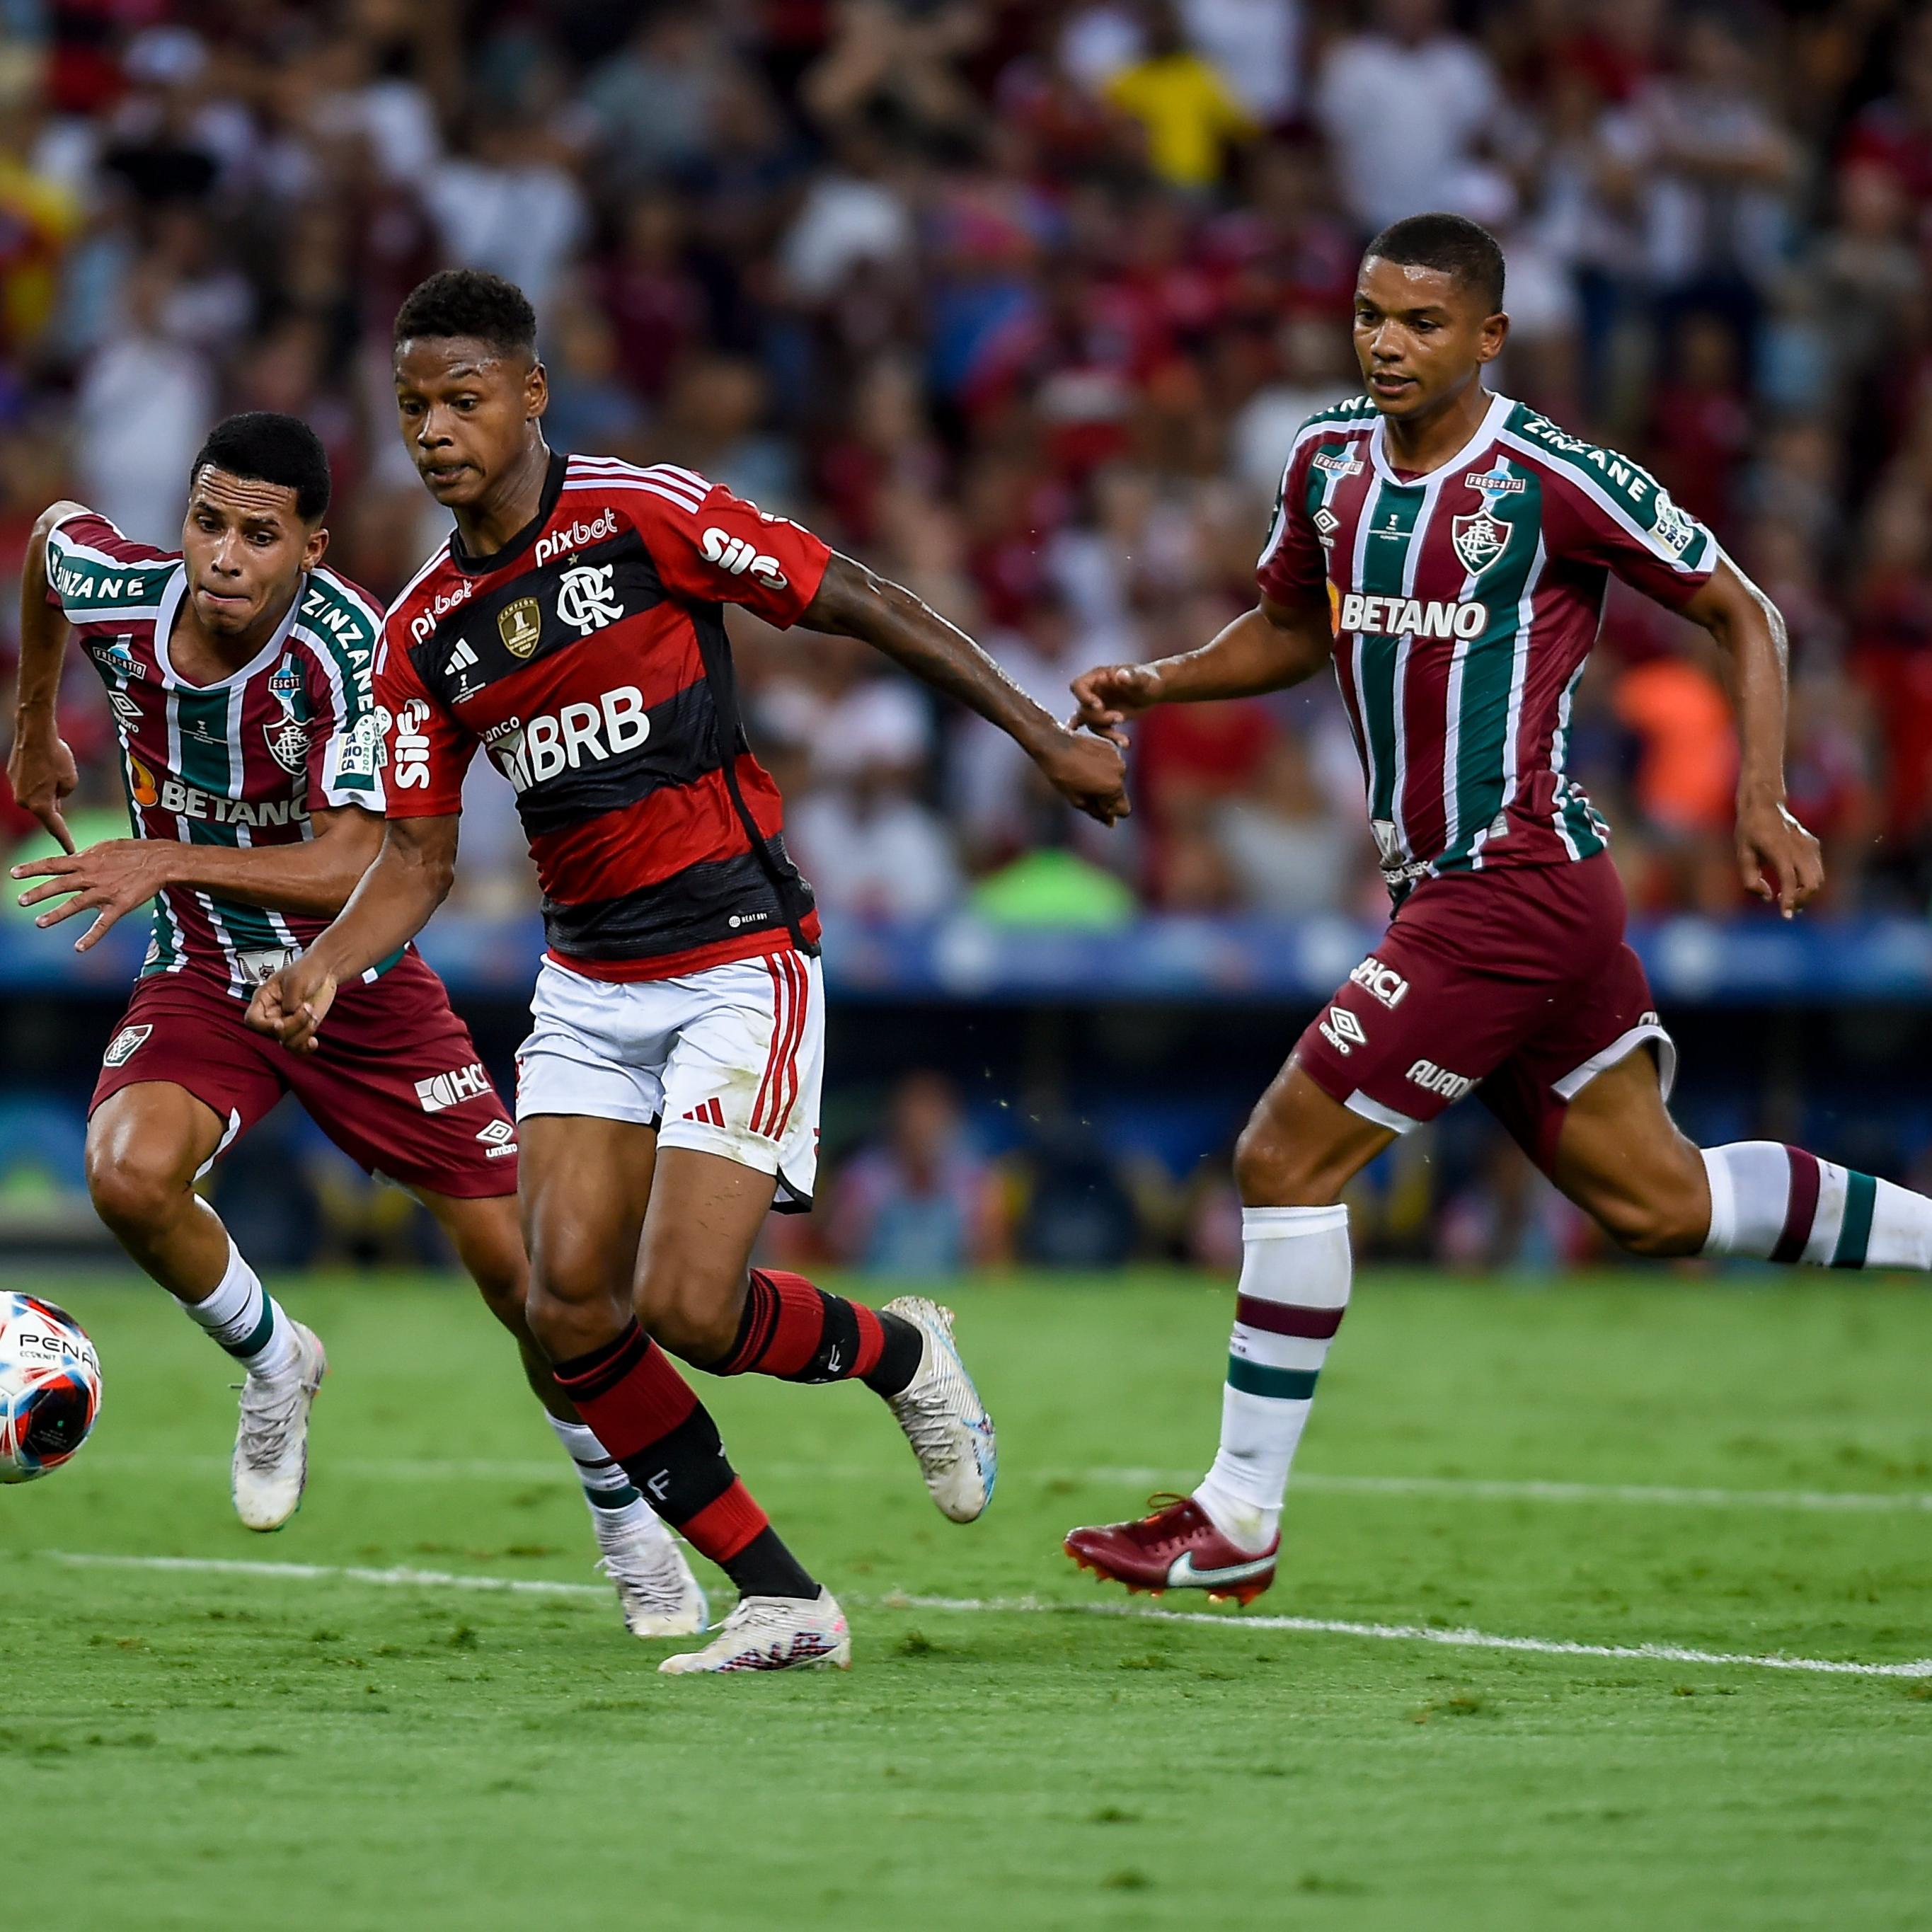 Onde assistir o jogo do Flamengo hoje, quinta-feira, 10, pela Copa